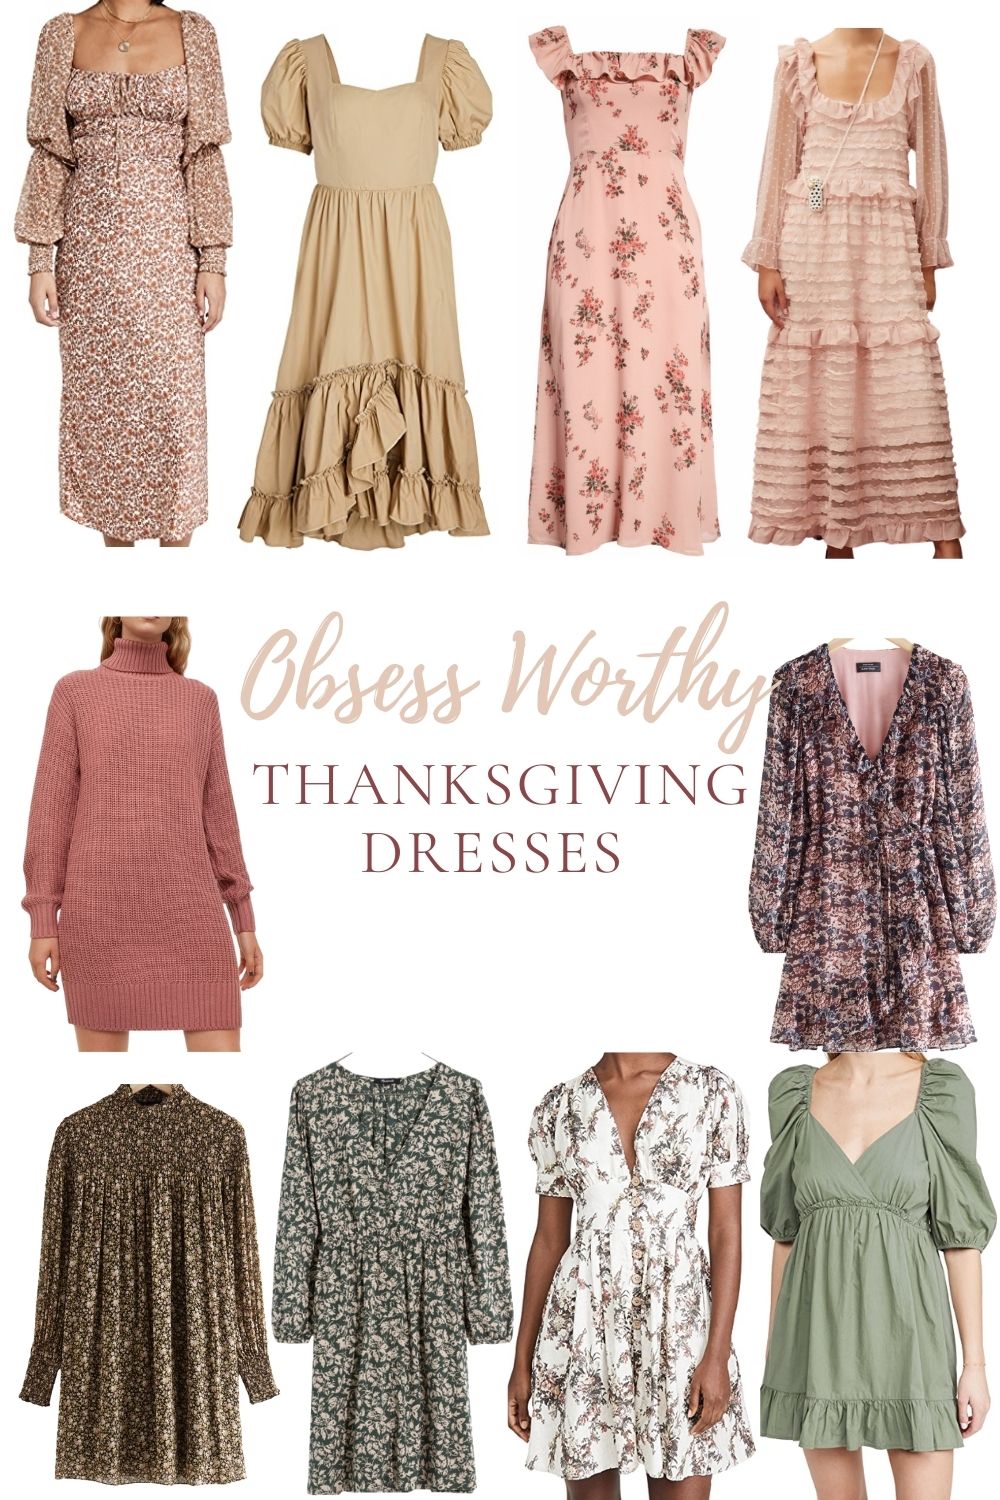 Dresses to Wear for Thanksgiving Dinner #thanksgivingoutfit #thanksgiving #thanksgivingdress